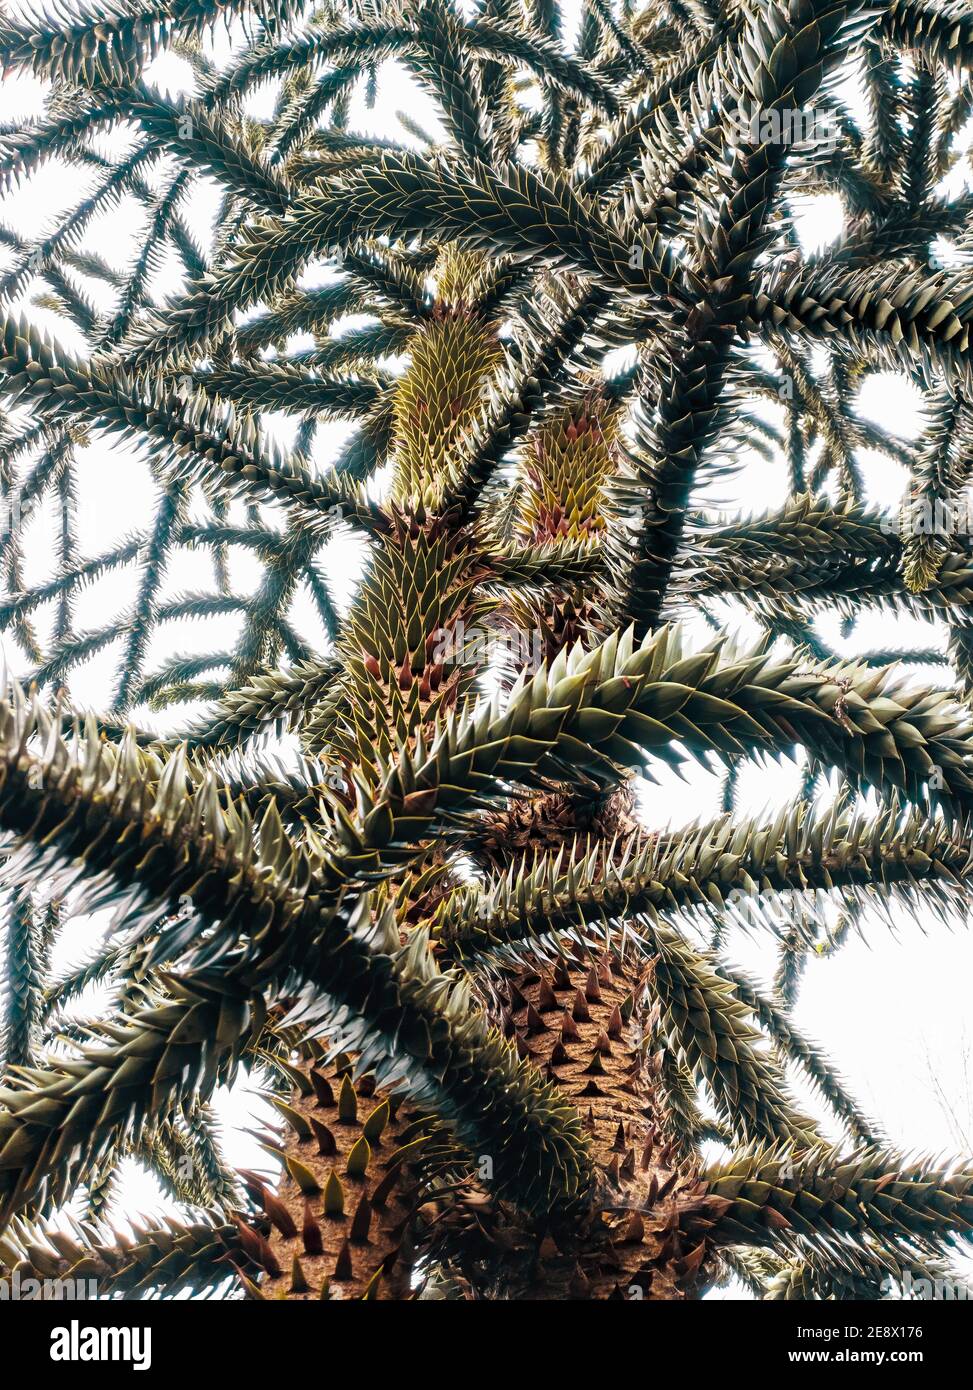 Albero di puzzle di scimmia, (Araucaria Araucana), chiamato anche pino cileno, albero di coda di scimmia. Sfondo bianco Foto Stock